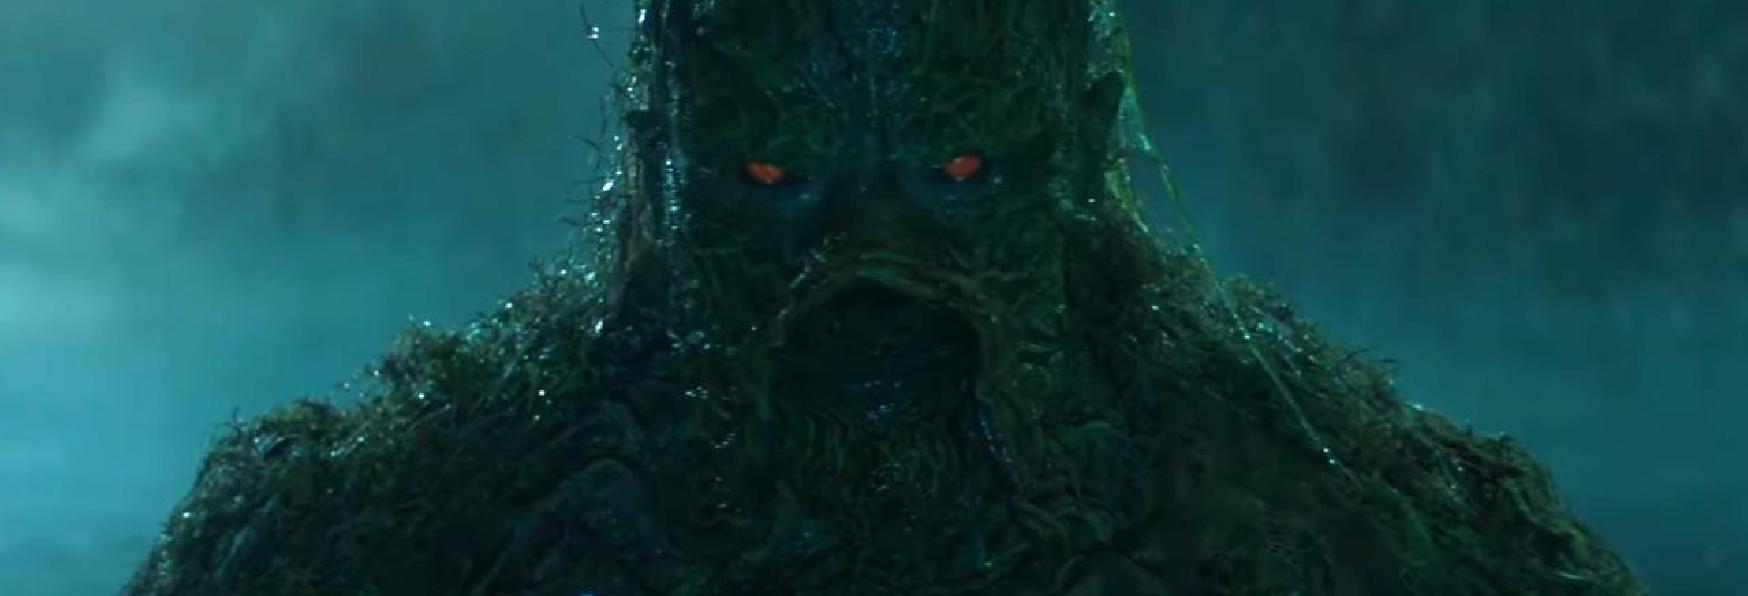 Swamp Thing: il primo Teaser Trailer della Nuova Serie TV DC